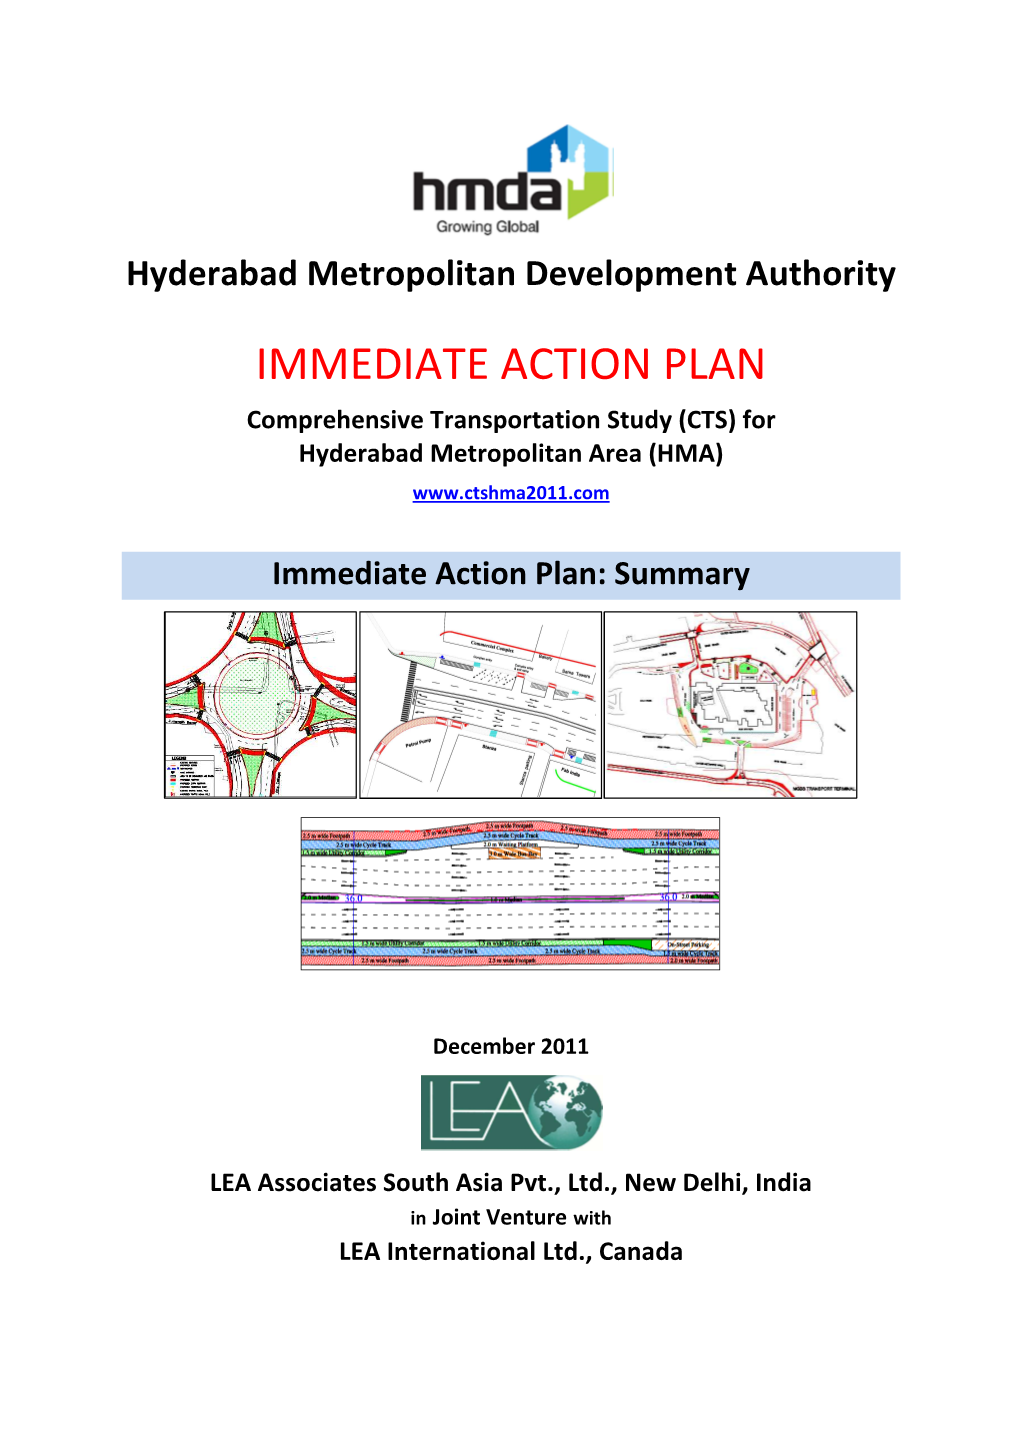 CTS) for Hyderabad Metropolitan Area (HMA